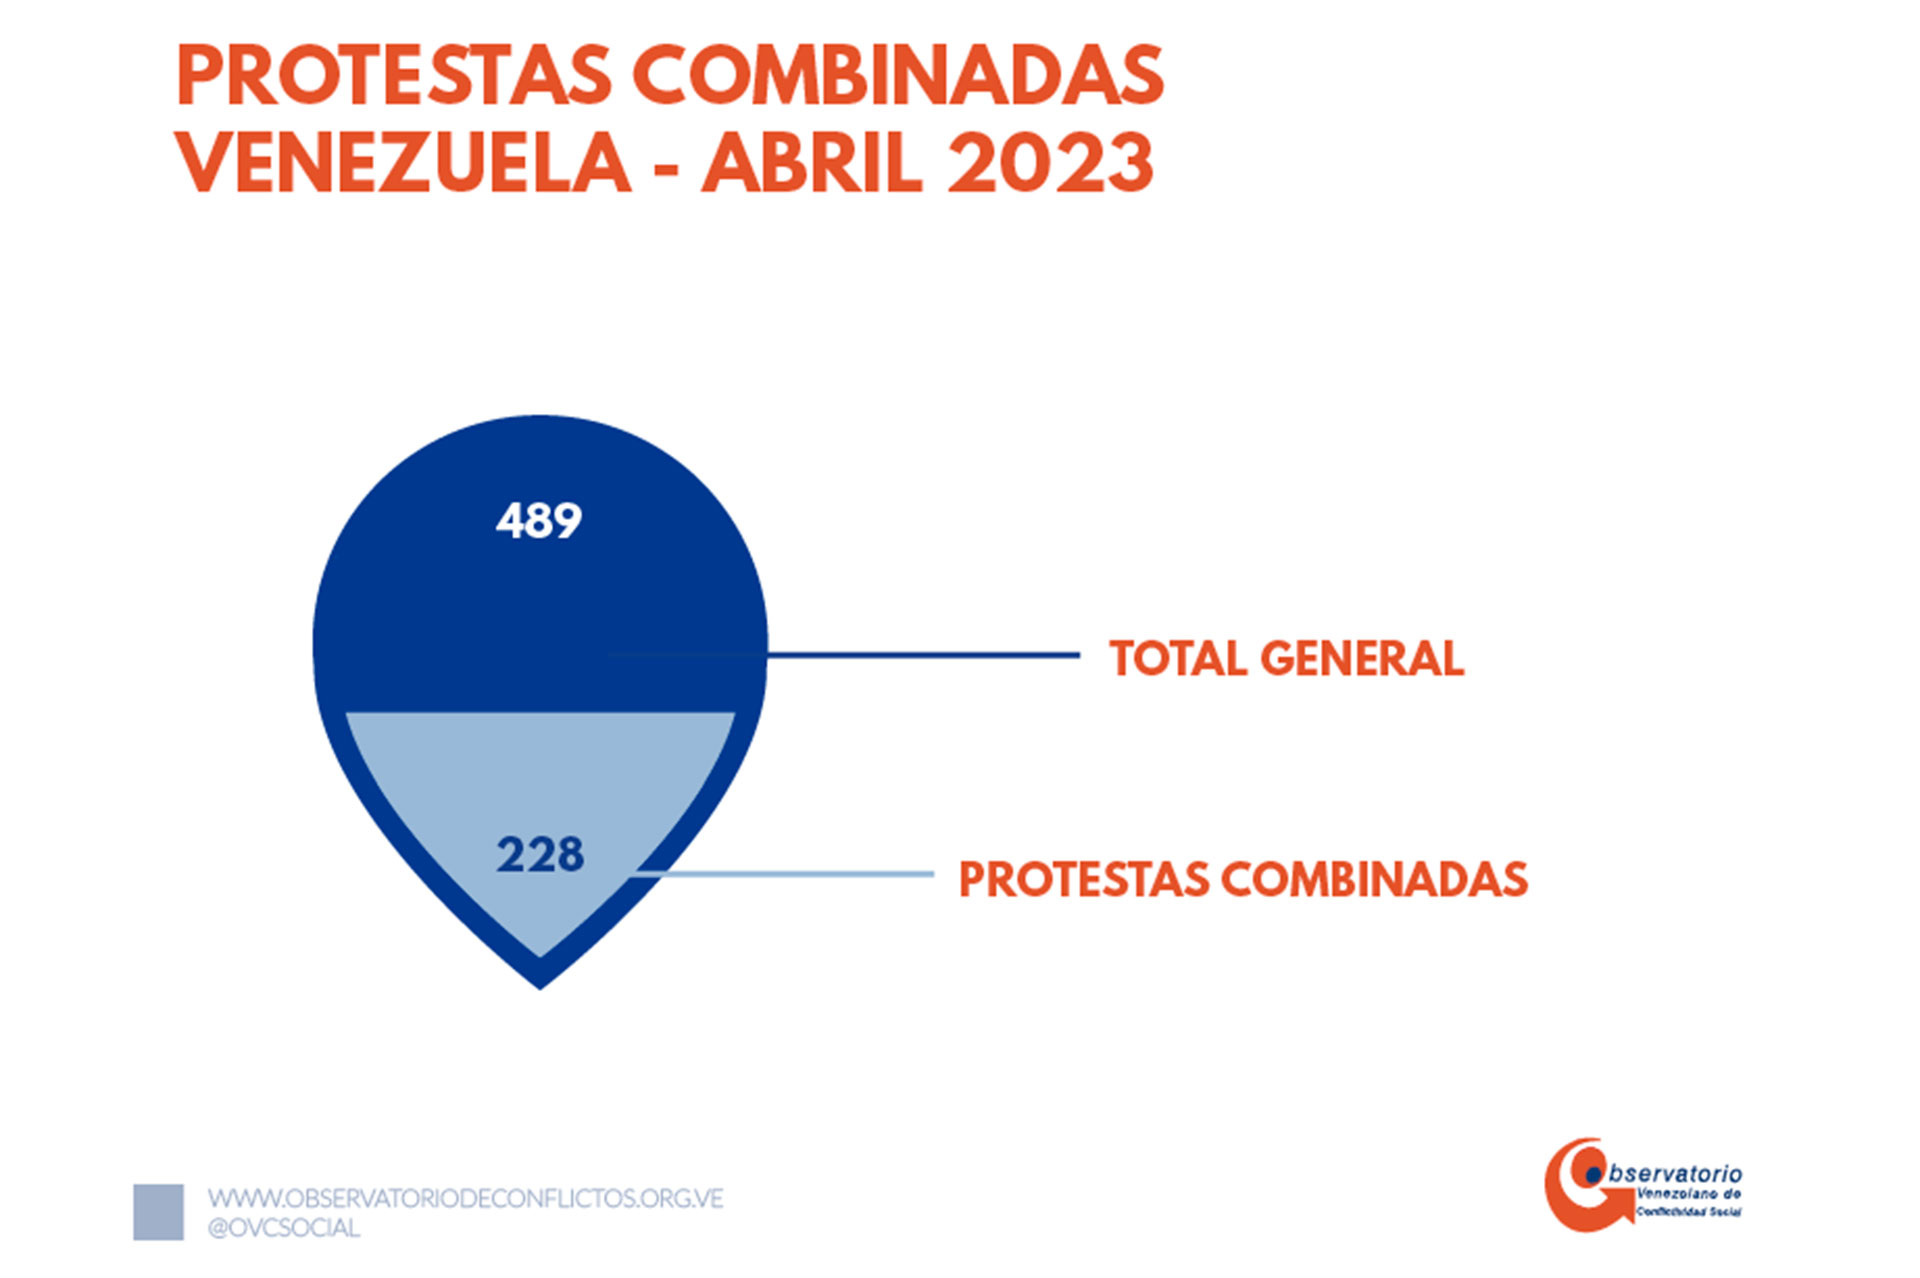 Protestas combinadas (Observatorio Venezolano de Conflictividad Social)